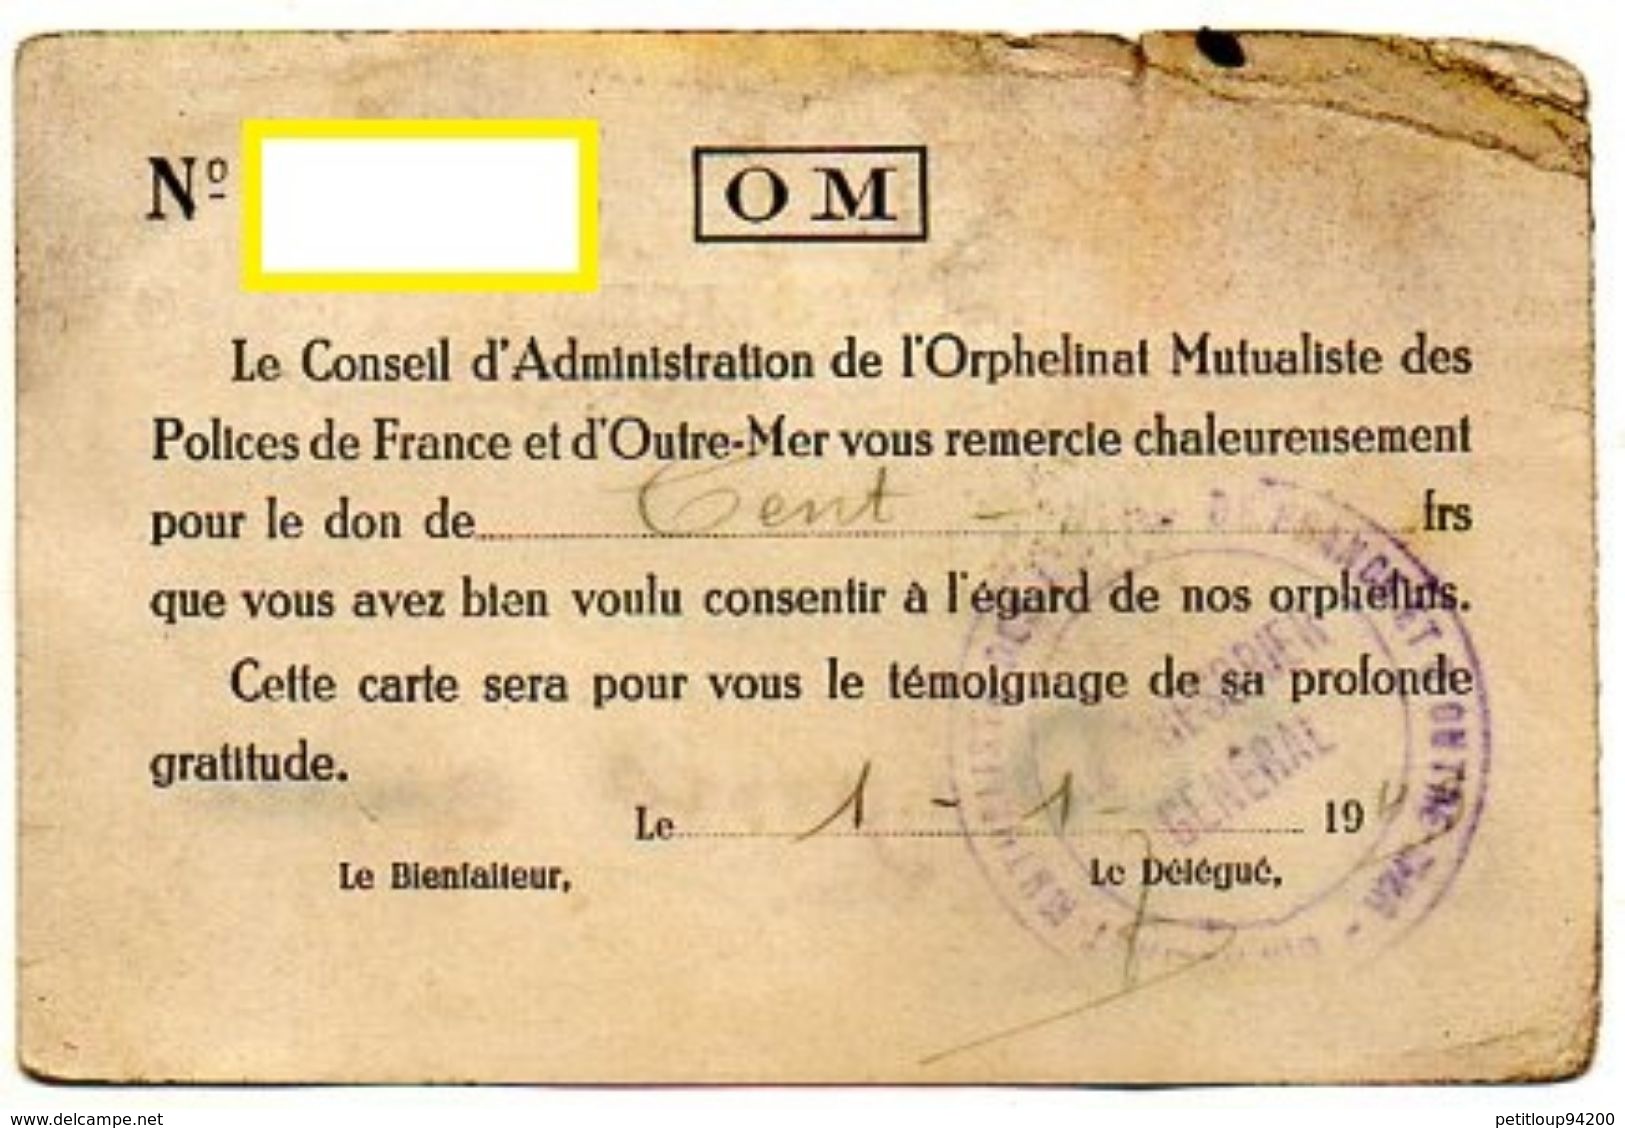 ORPHELINAT MUTUALISTE DES POLICES DE FRANCE ET D'OUTRE MER  Membre Honoraire PUTEAUX Année1949 - Police